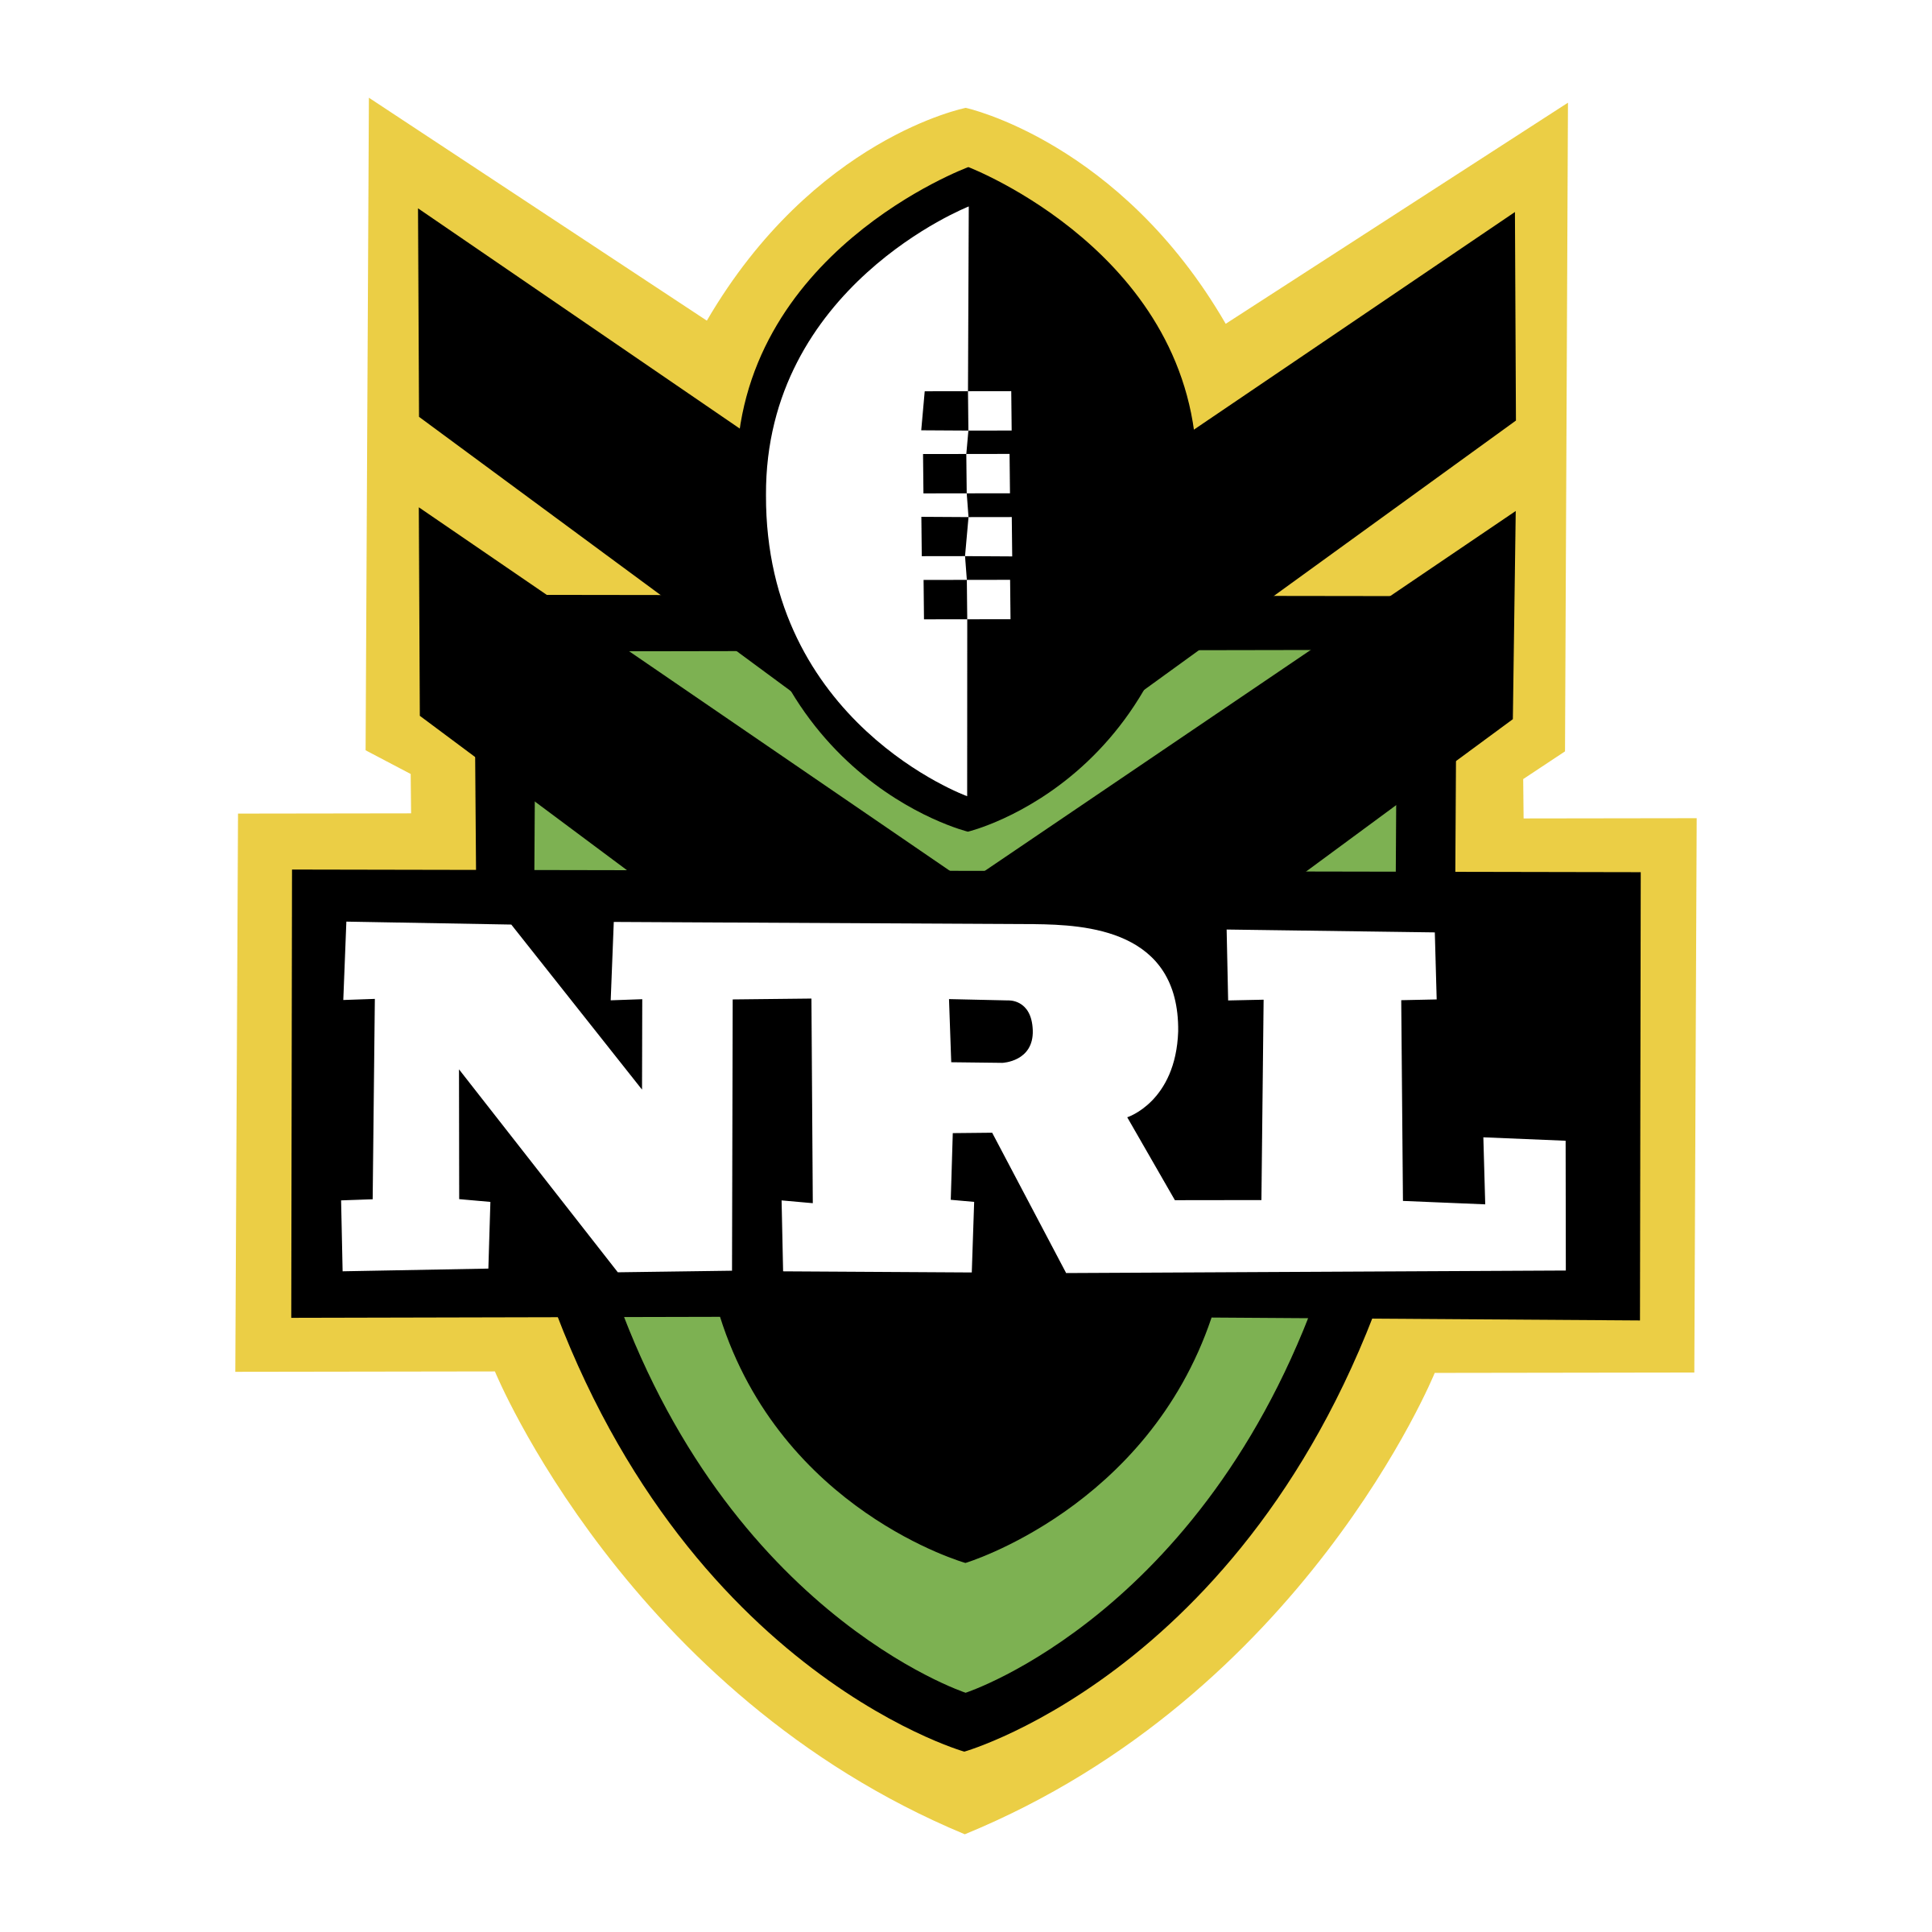 NRL Logo - NRL Logo PNG Transparent & SVG Vector - Freebie Supply